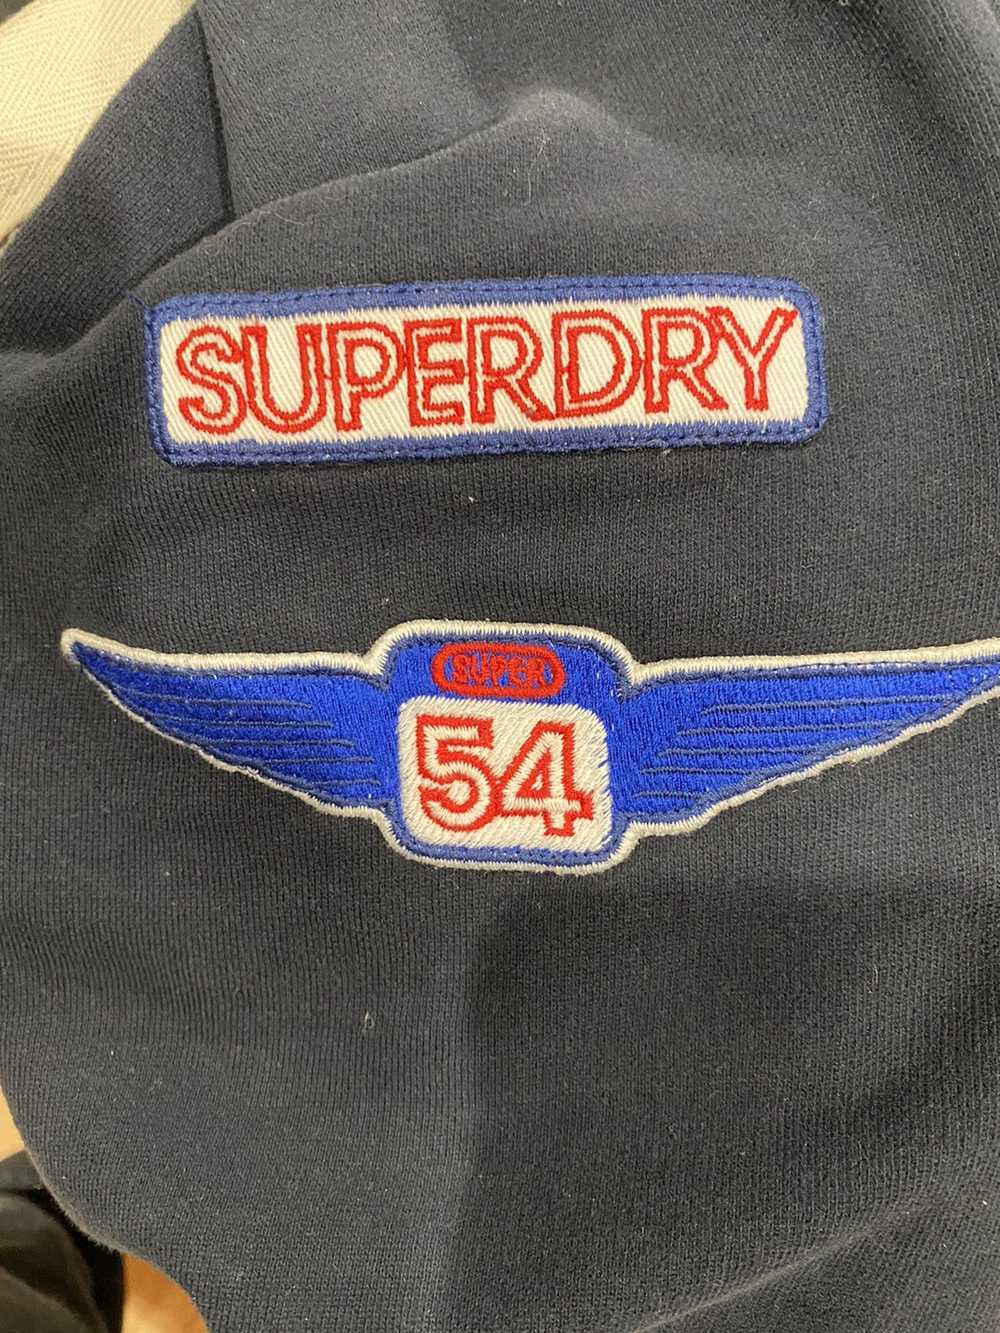 Japanese Brand × Superdry Superdry Racing Hoodie - image 4